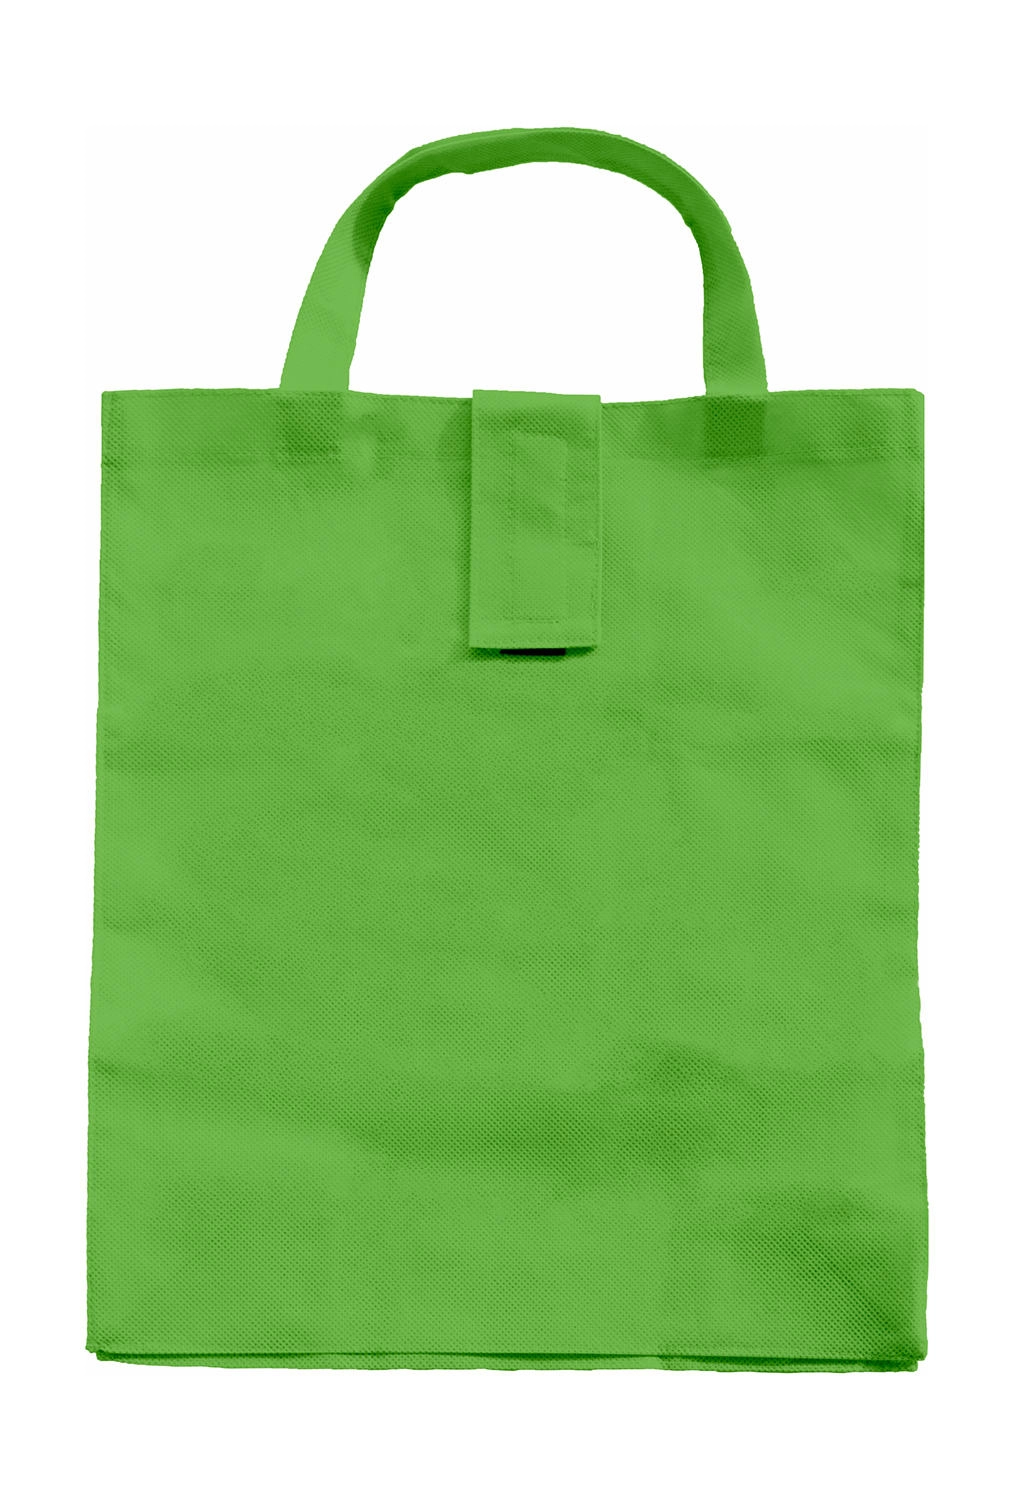 Folding Shopper SH zum Besticken und Bedrucken in der Farbe Light Green mit Ihren Logo, Schriftzug oder Motiv.